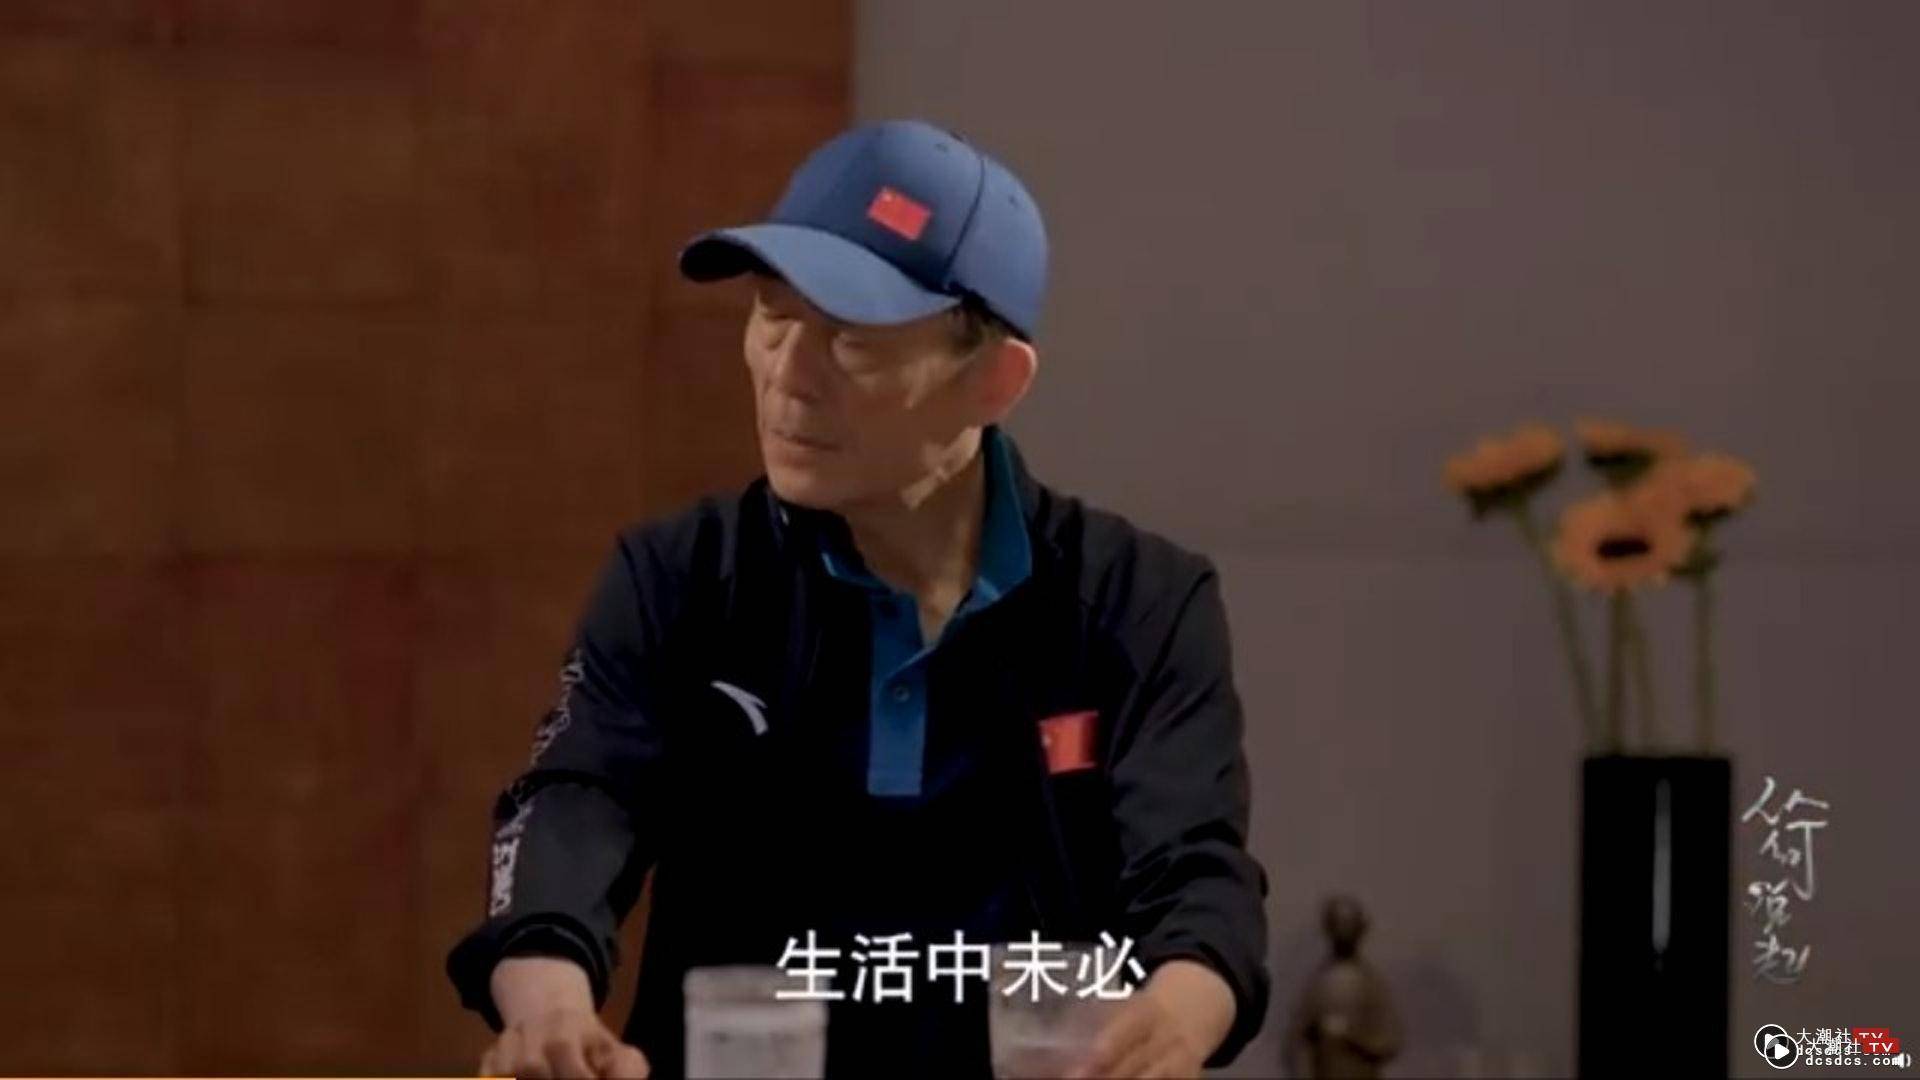 张艺谋是中国最受世界触目的导演之一。 （影片截图）